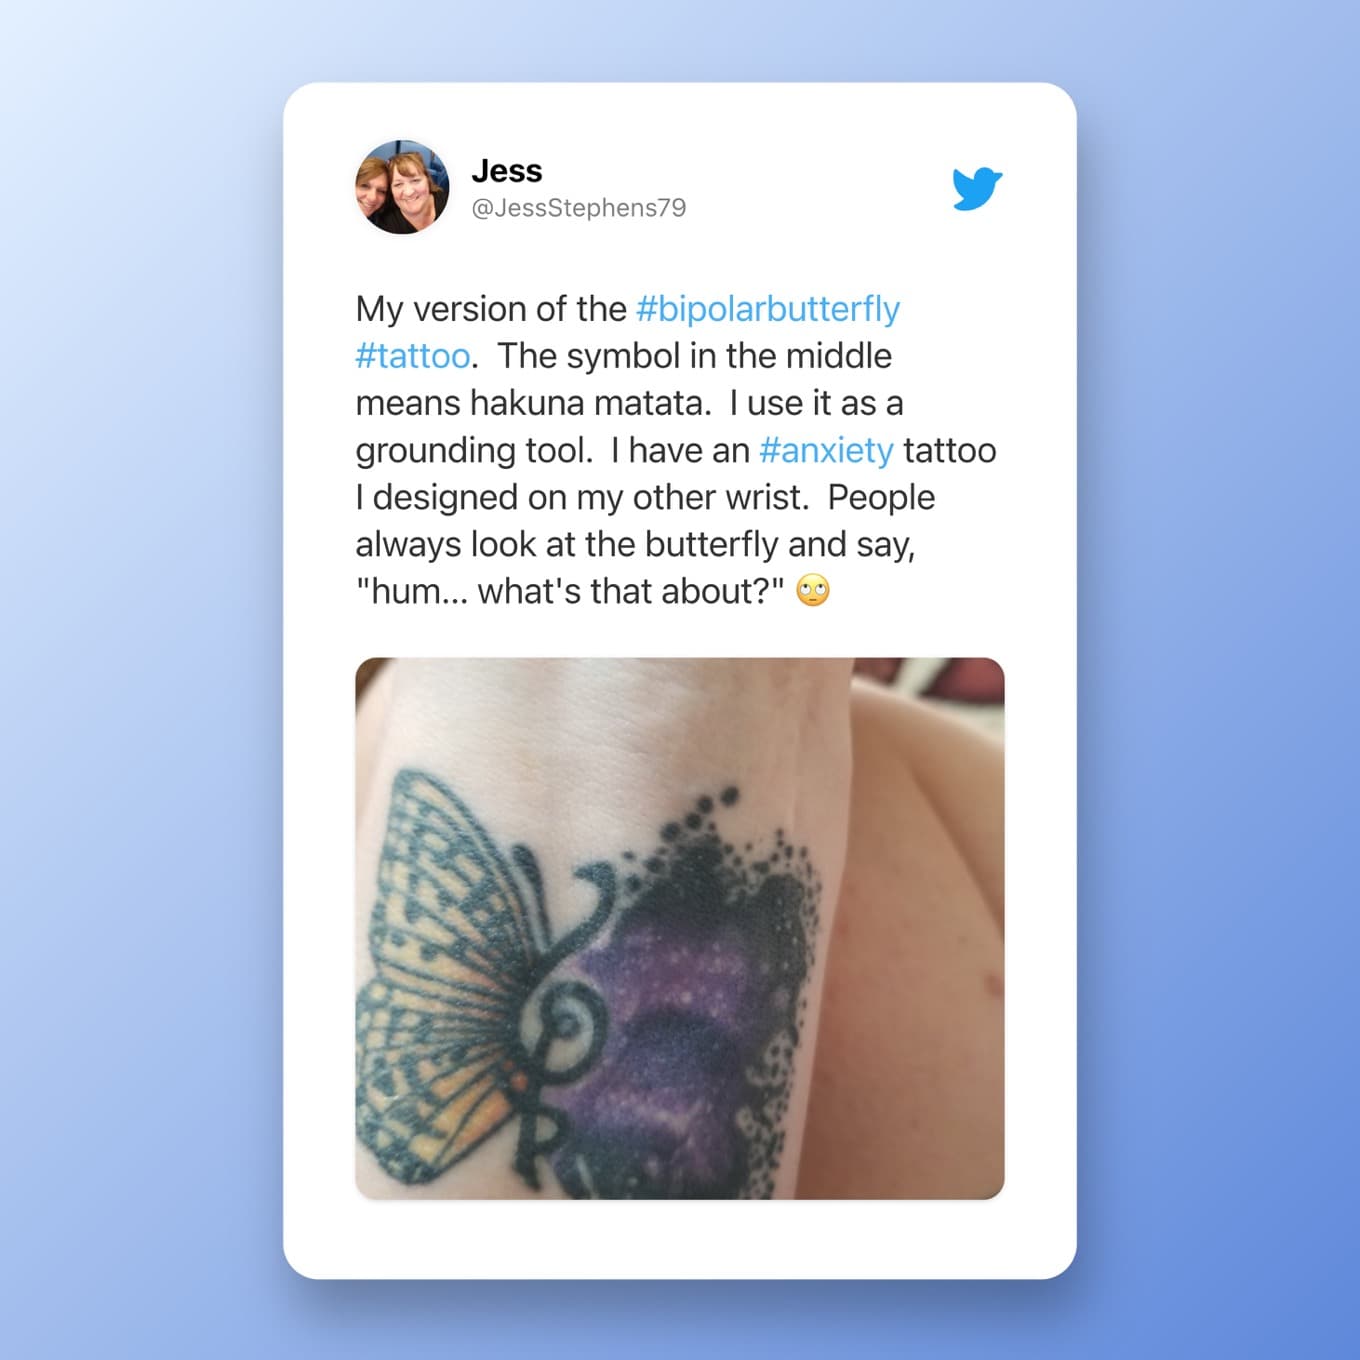 Mijn versie van de #bipolarbutterfly #tattoo.  Het symbool in het midden betekent hakuna matata.  Ik gebruik het als een aardingstool.  Ik heb een #anxiety tattoo die ik op mijn andere pols heb ontworpen.  Mensen kijken altijd naar de vlinder en zeggen: "brommen... waar gaat dat over?" 🙄